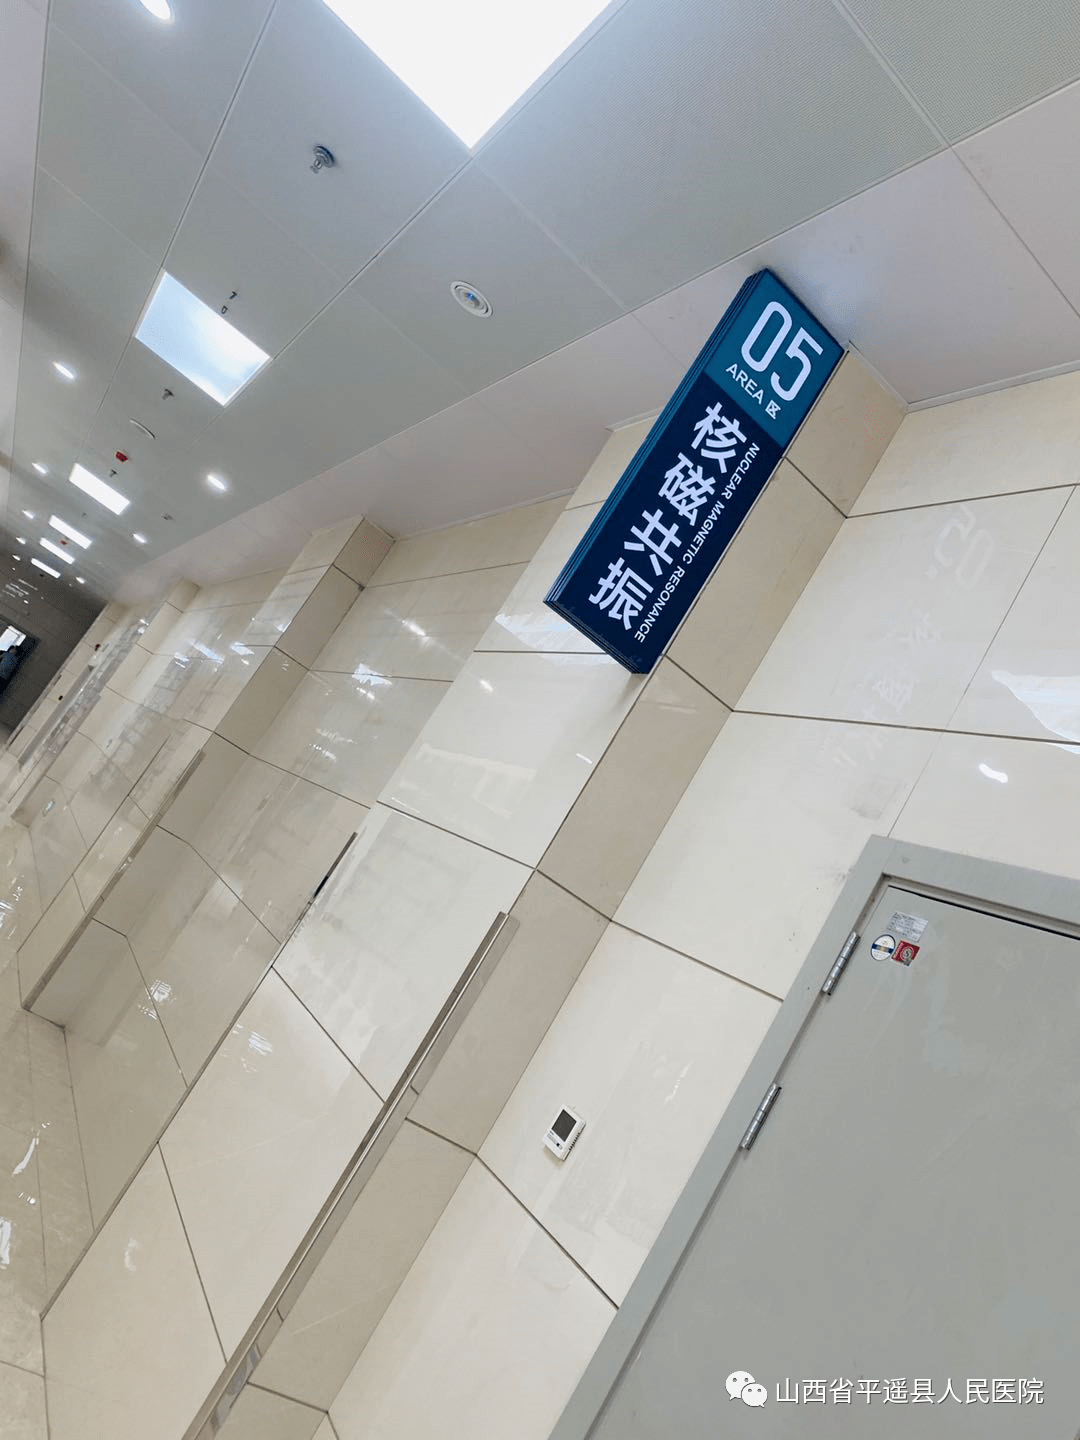 【奔走相告】平遥县人民医院新院区核磁共振正常运行